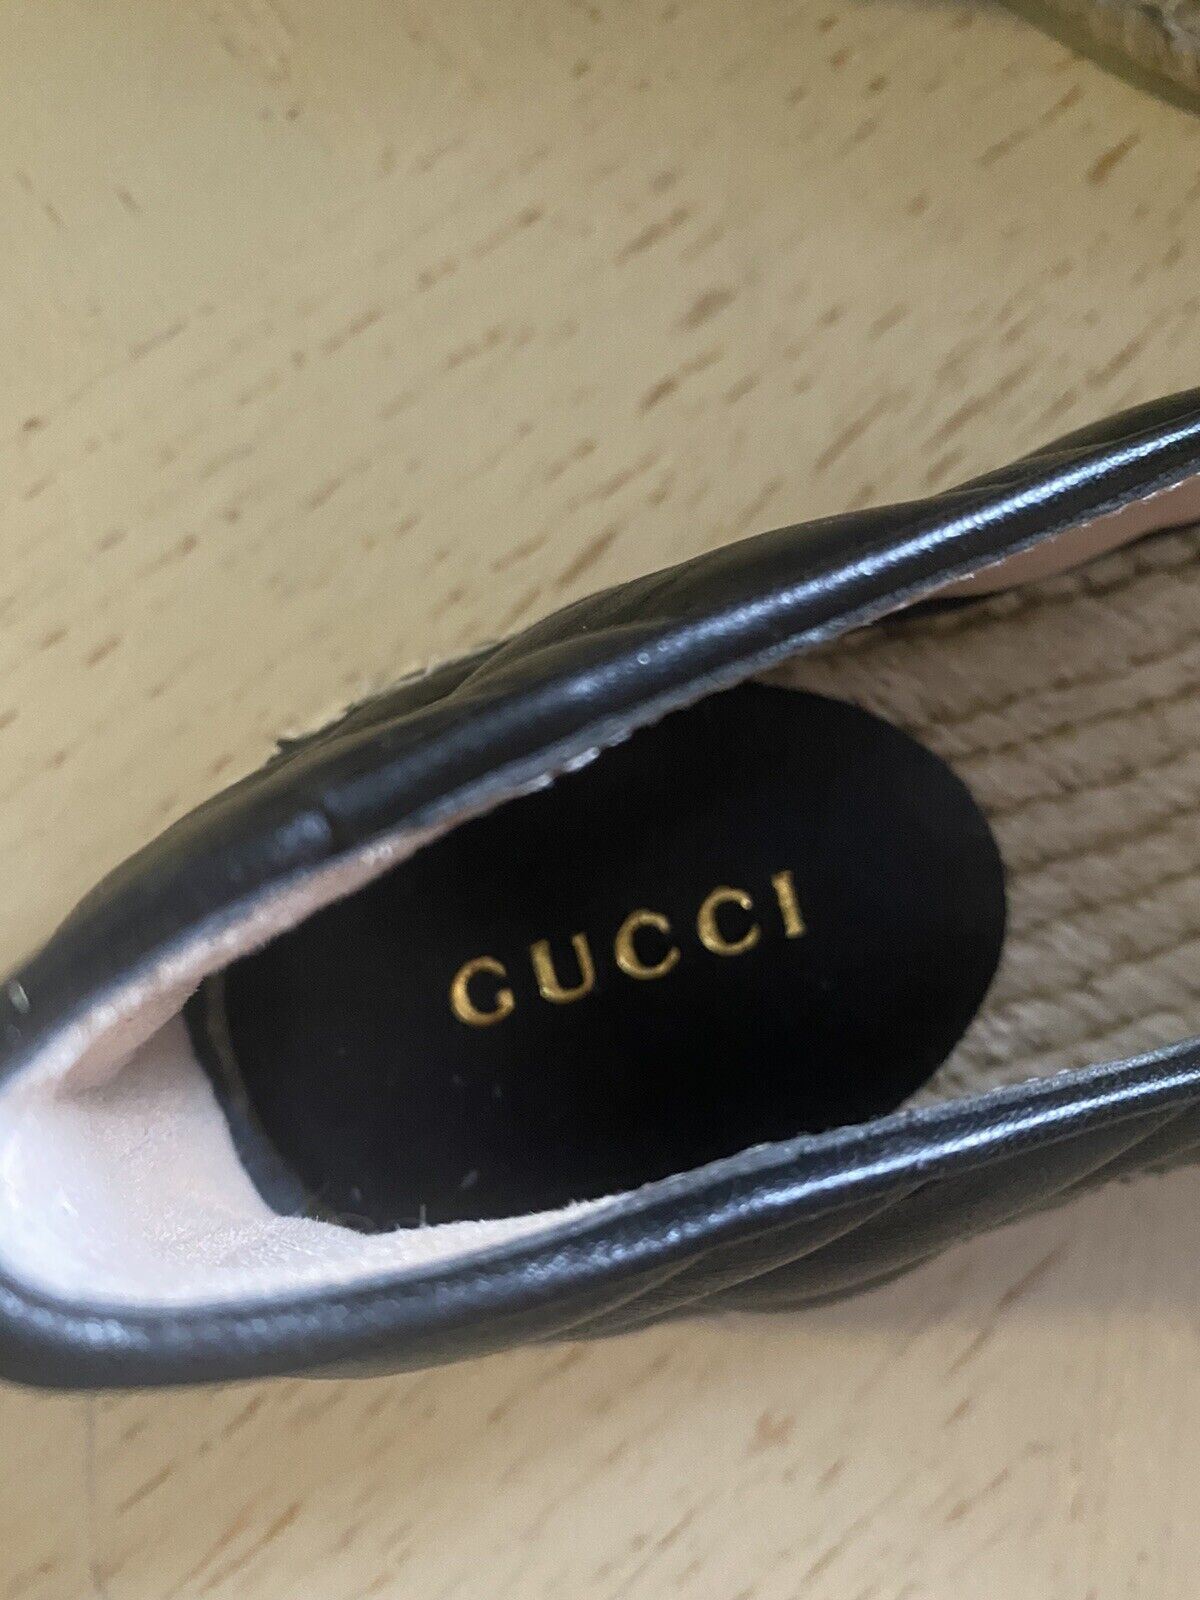 NIB Gucci Женские кожаные эспадрильи GG, черные 7 US/37 EU